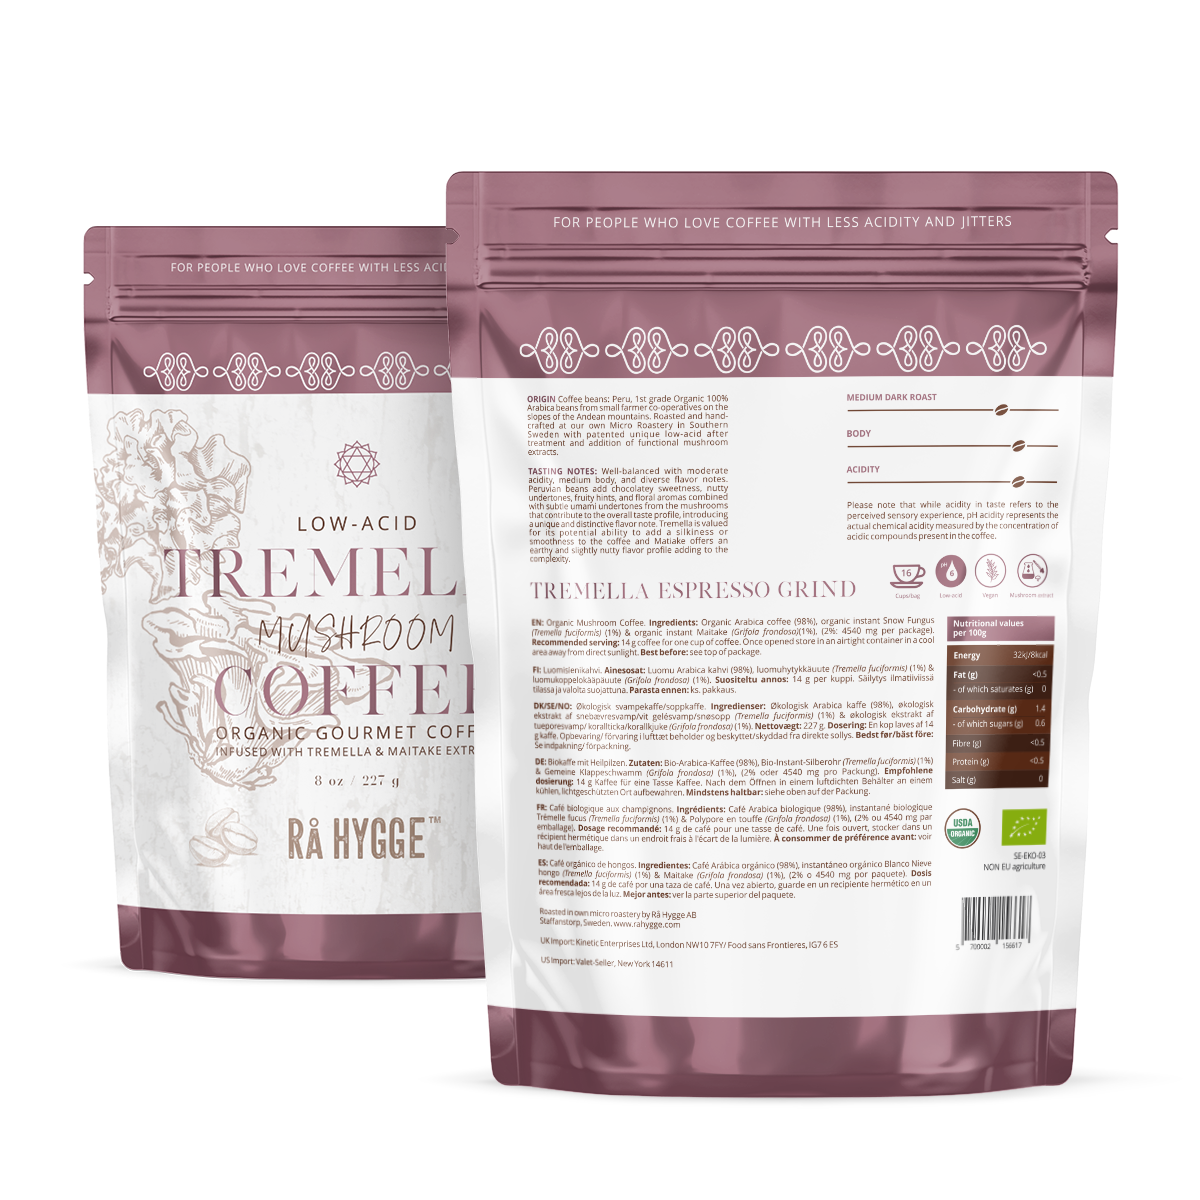 Tremella Mushroom Coffee (former Beauty) Espresso ground 227 g / 8 oz